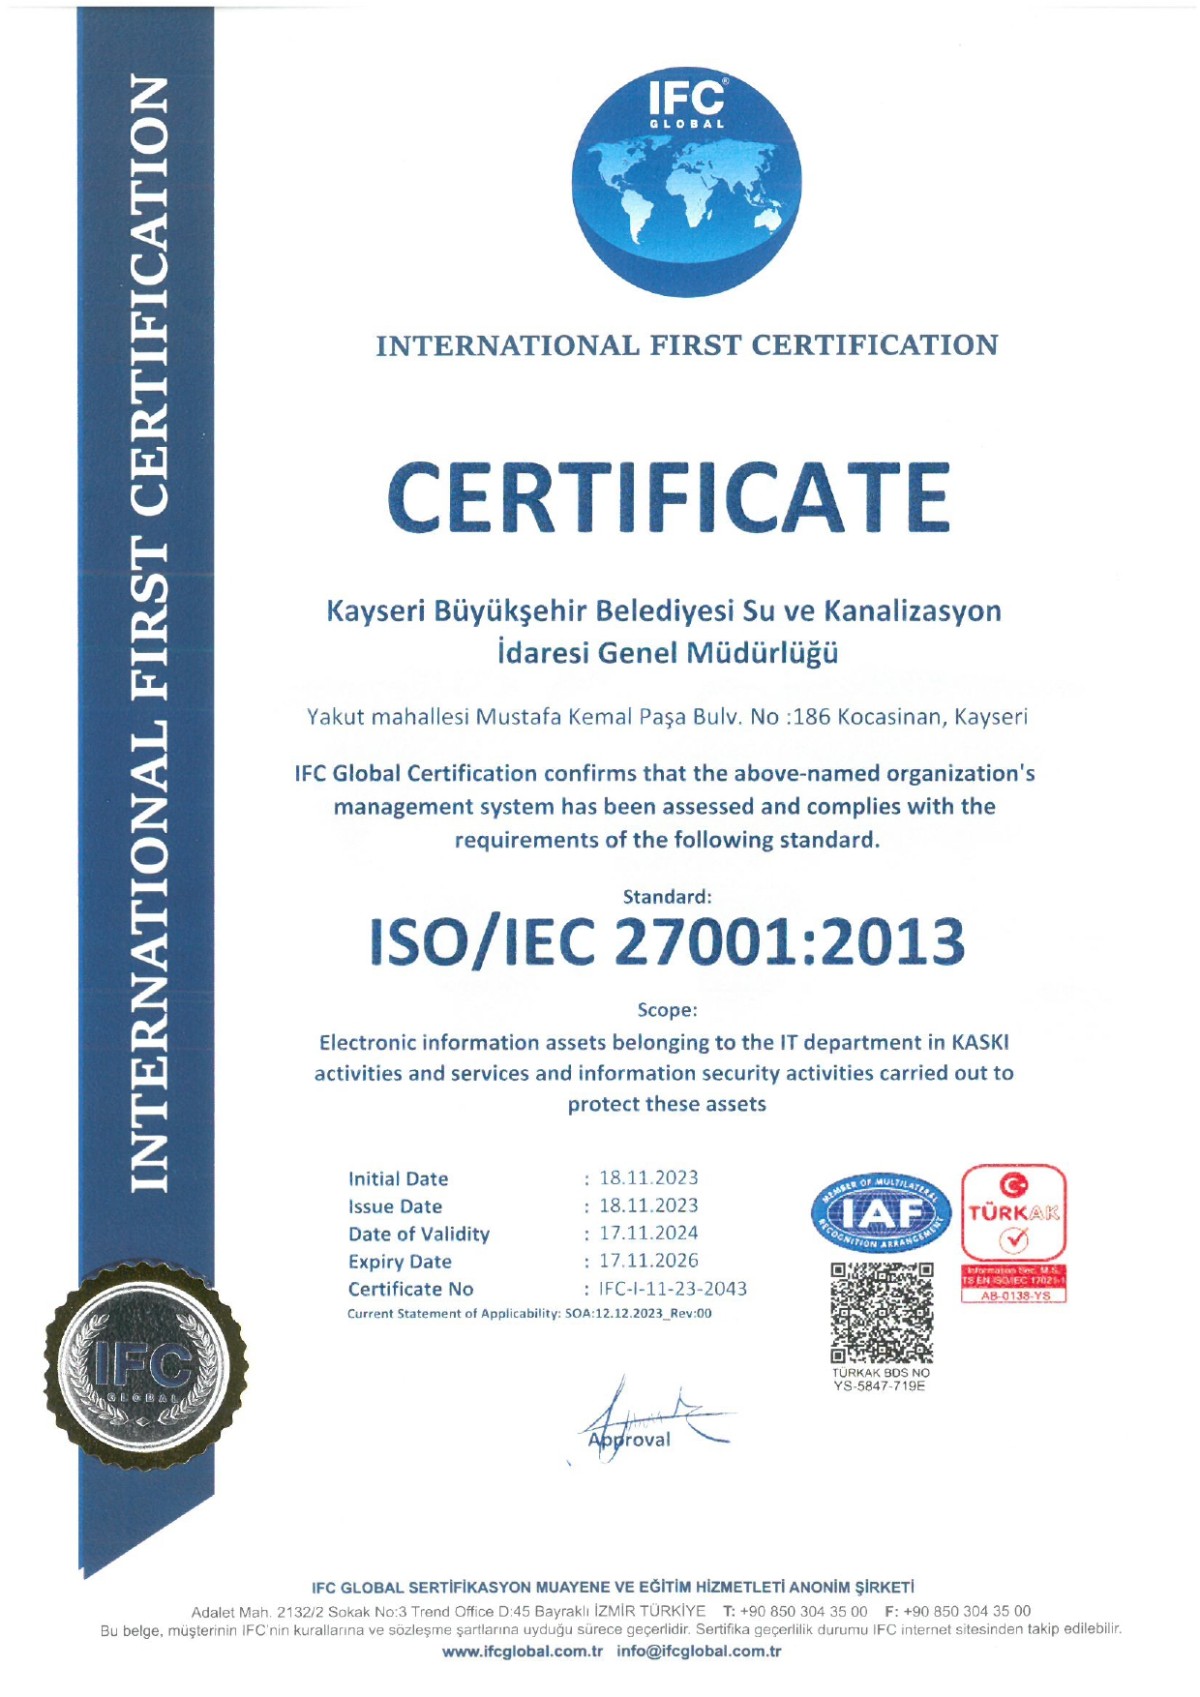 KASKİ, ‘ISO/IEC 27001 SERTİFİKASI’ İLE BİLGİ GÜVENLİĞİNİ TESCİLLEDİ